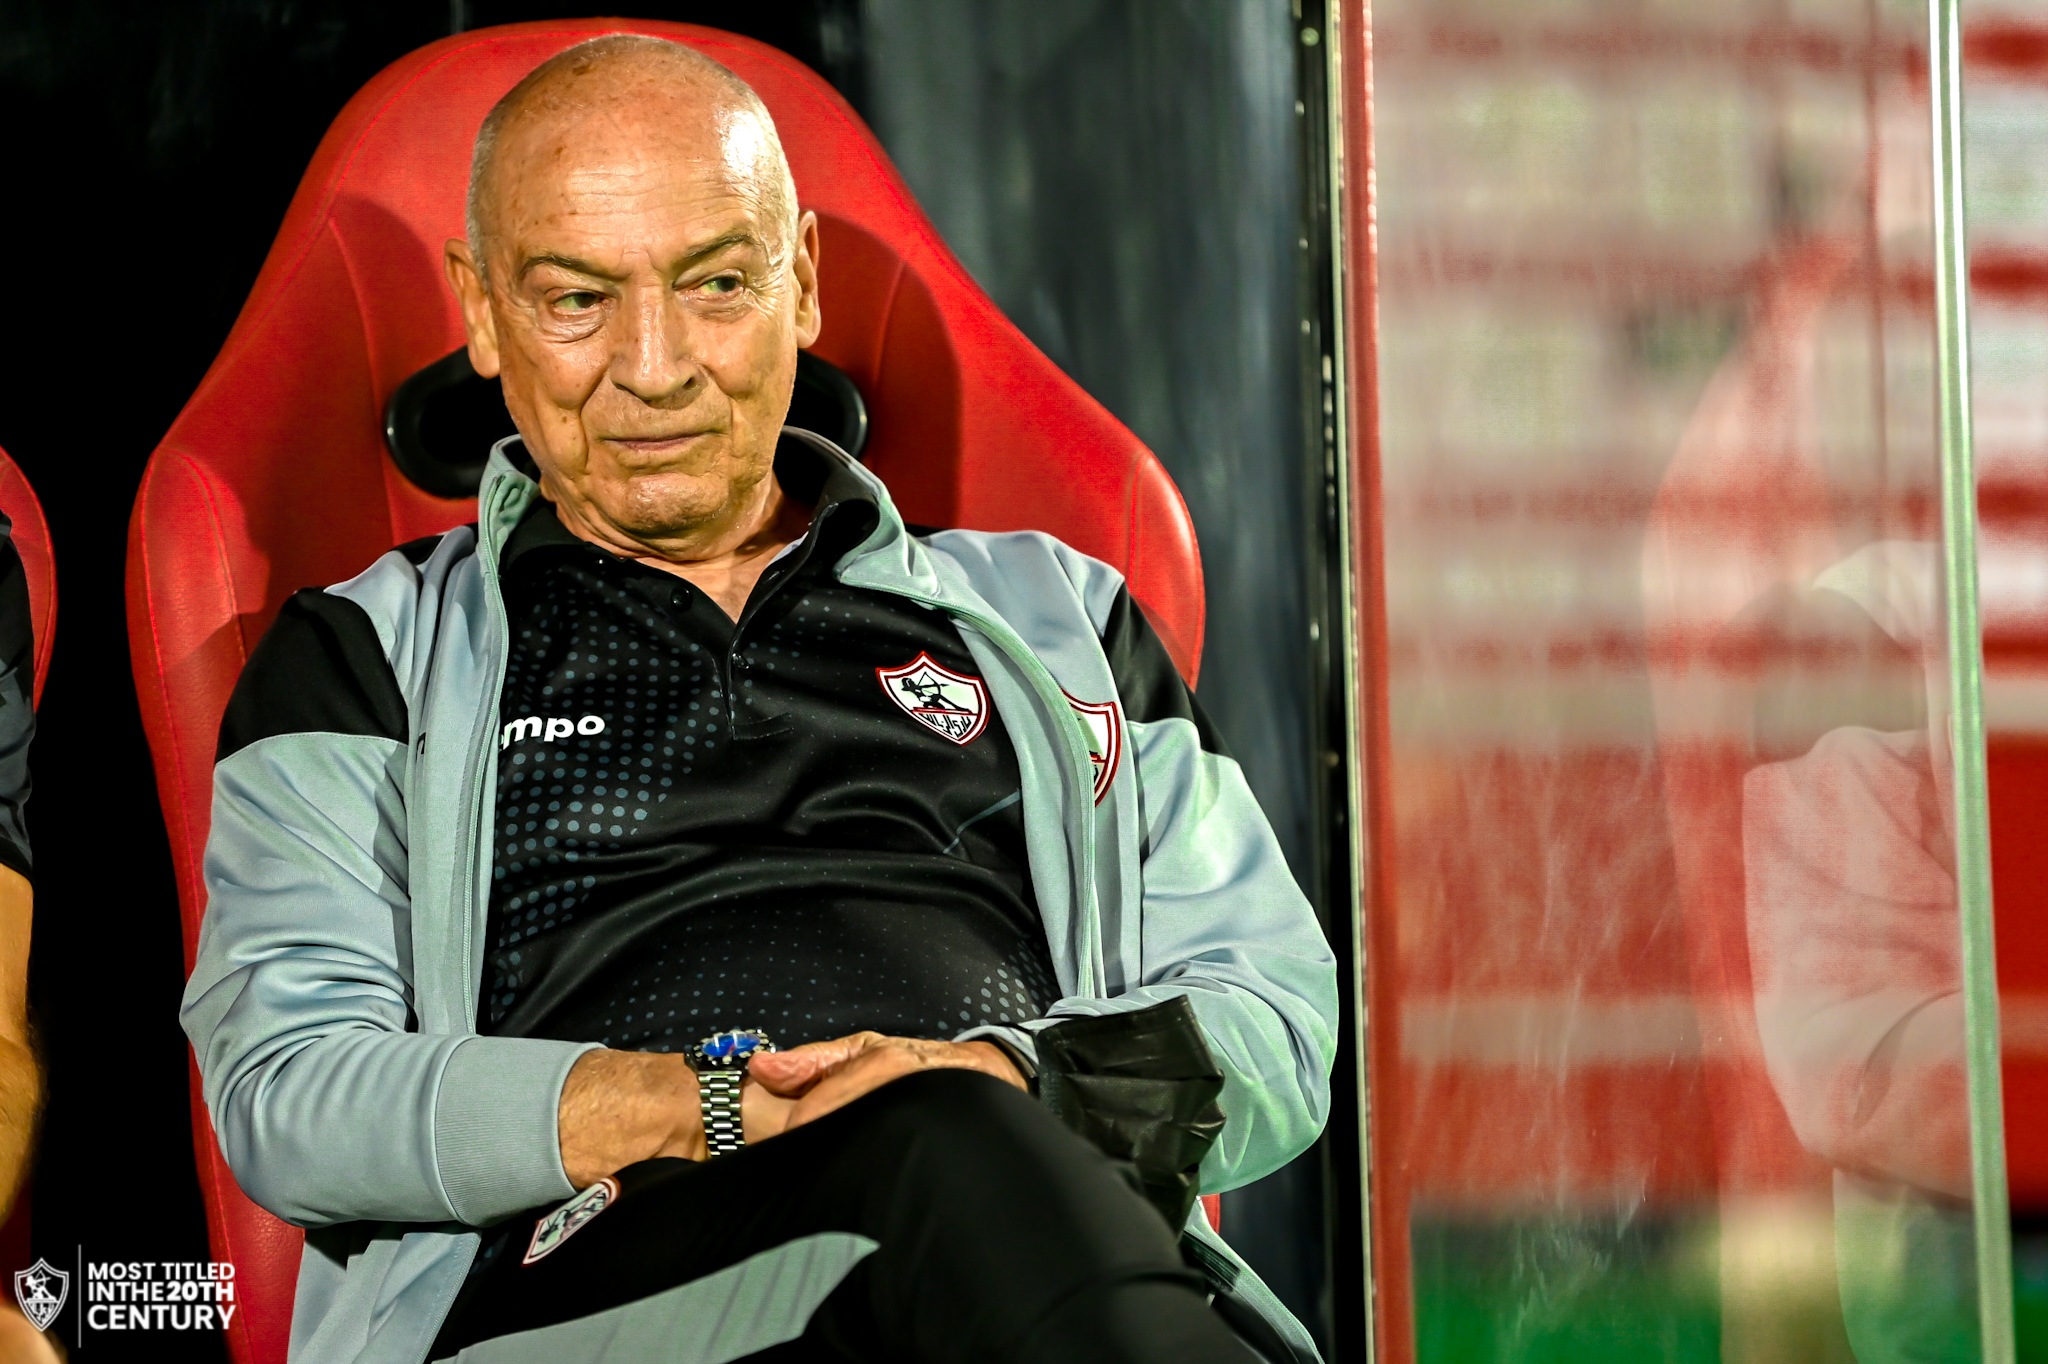 Believe it or not, Ferreira is a coach for Zamalek